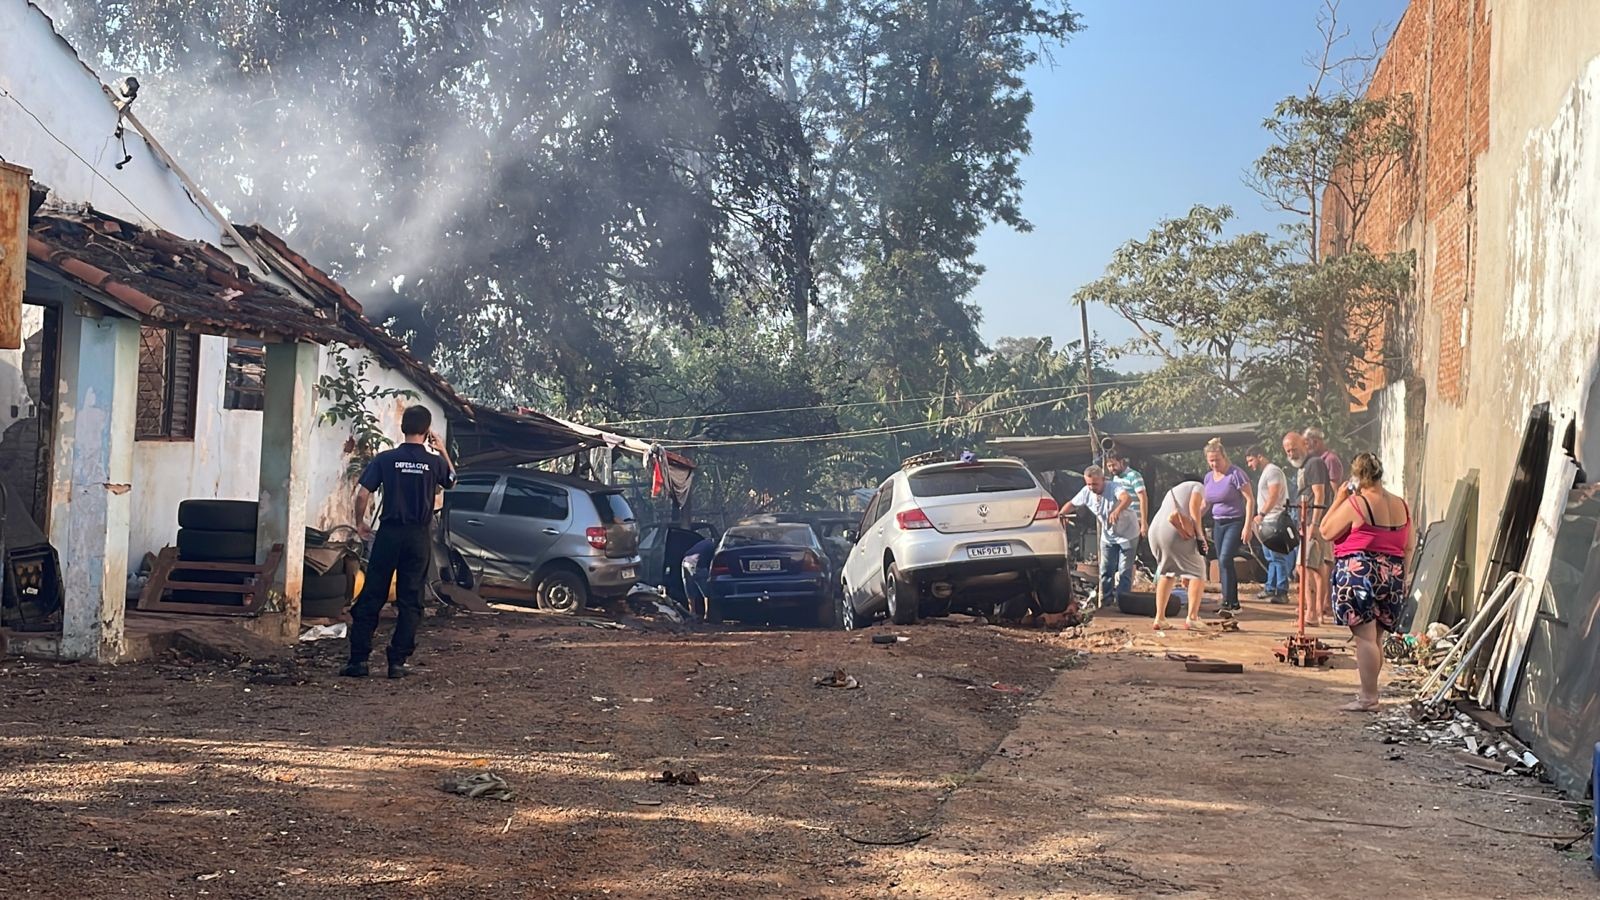 Morador em situação de rua morre carbonizado em incêndio em Araraquara